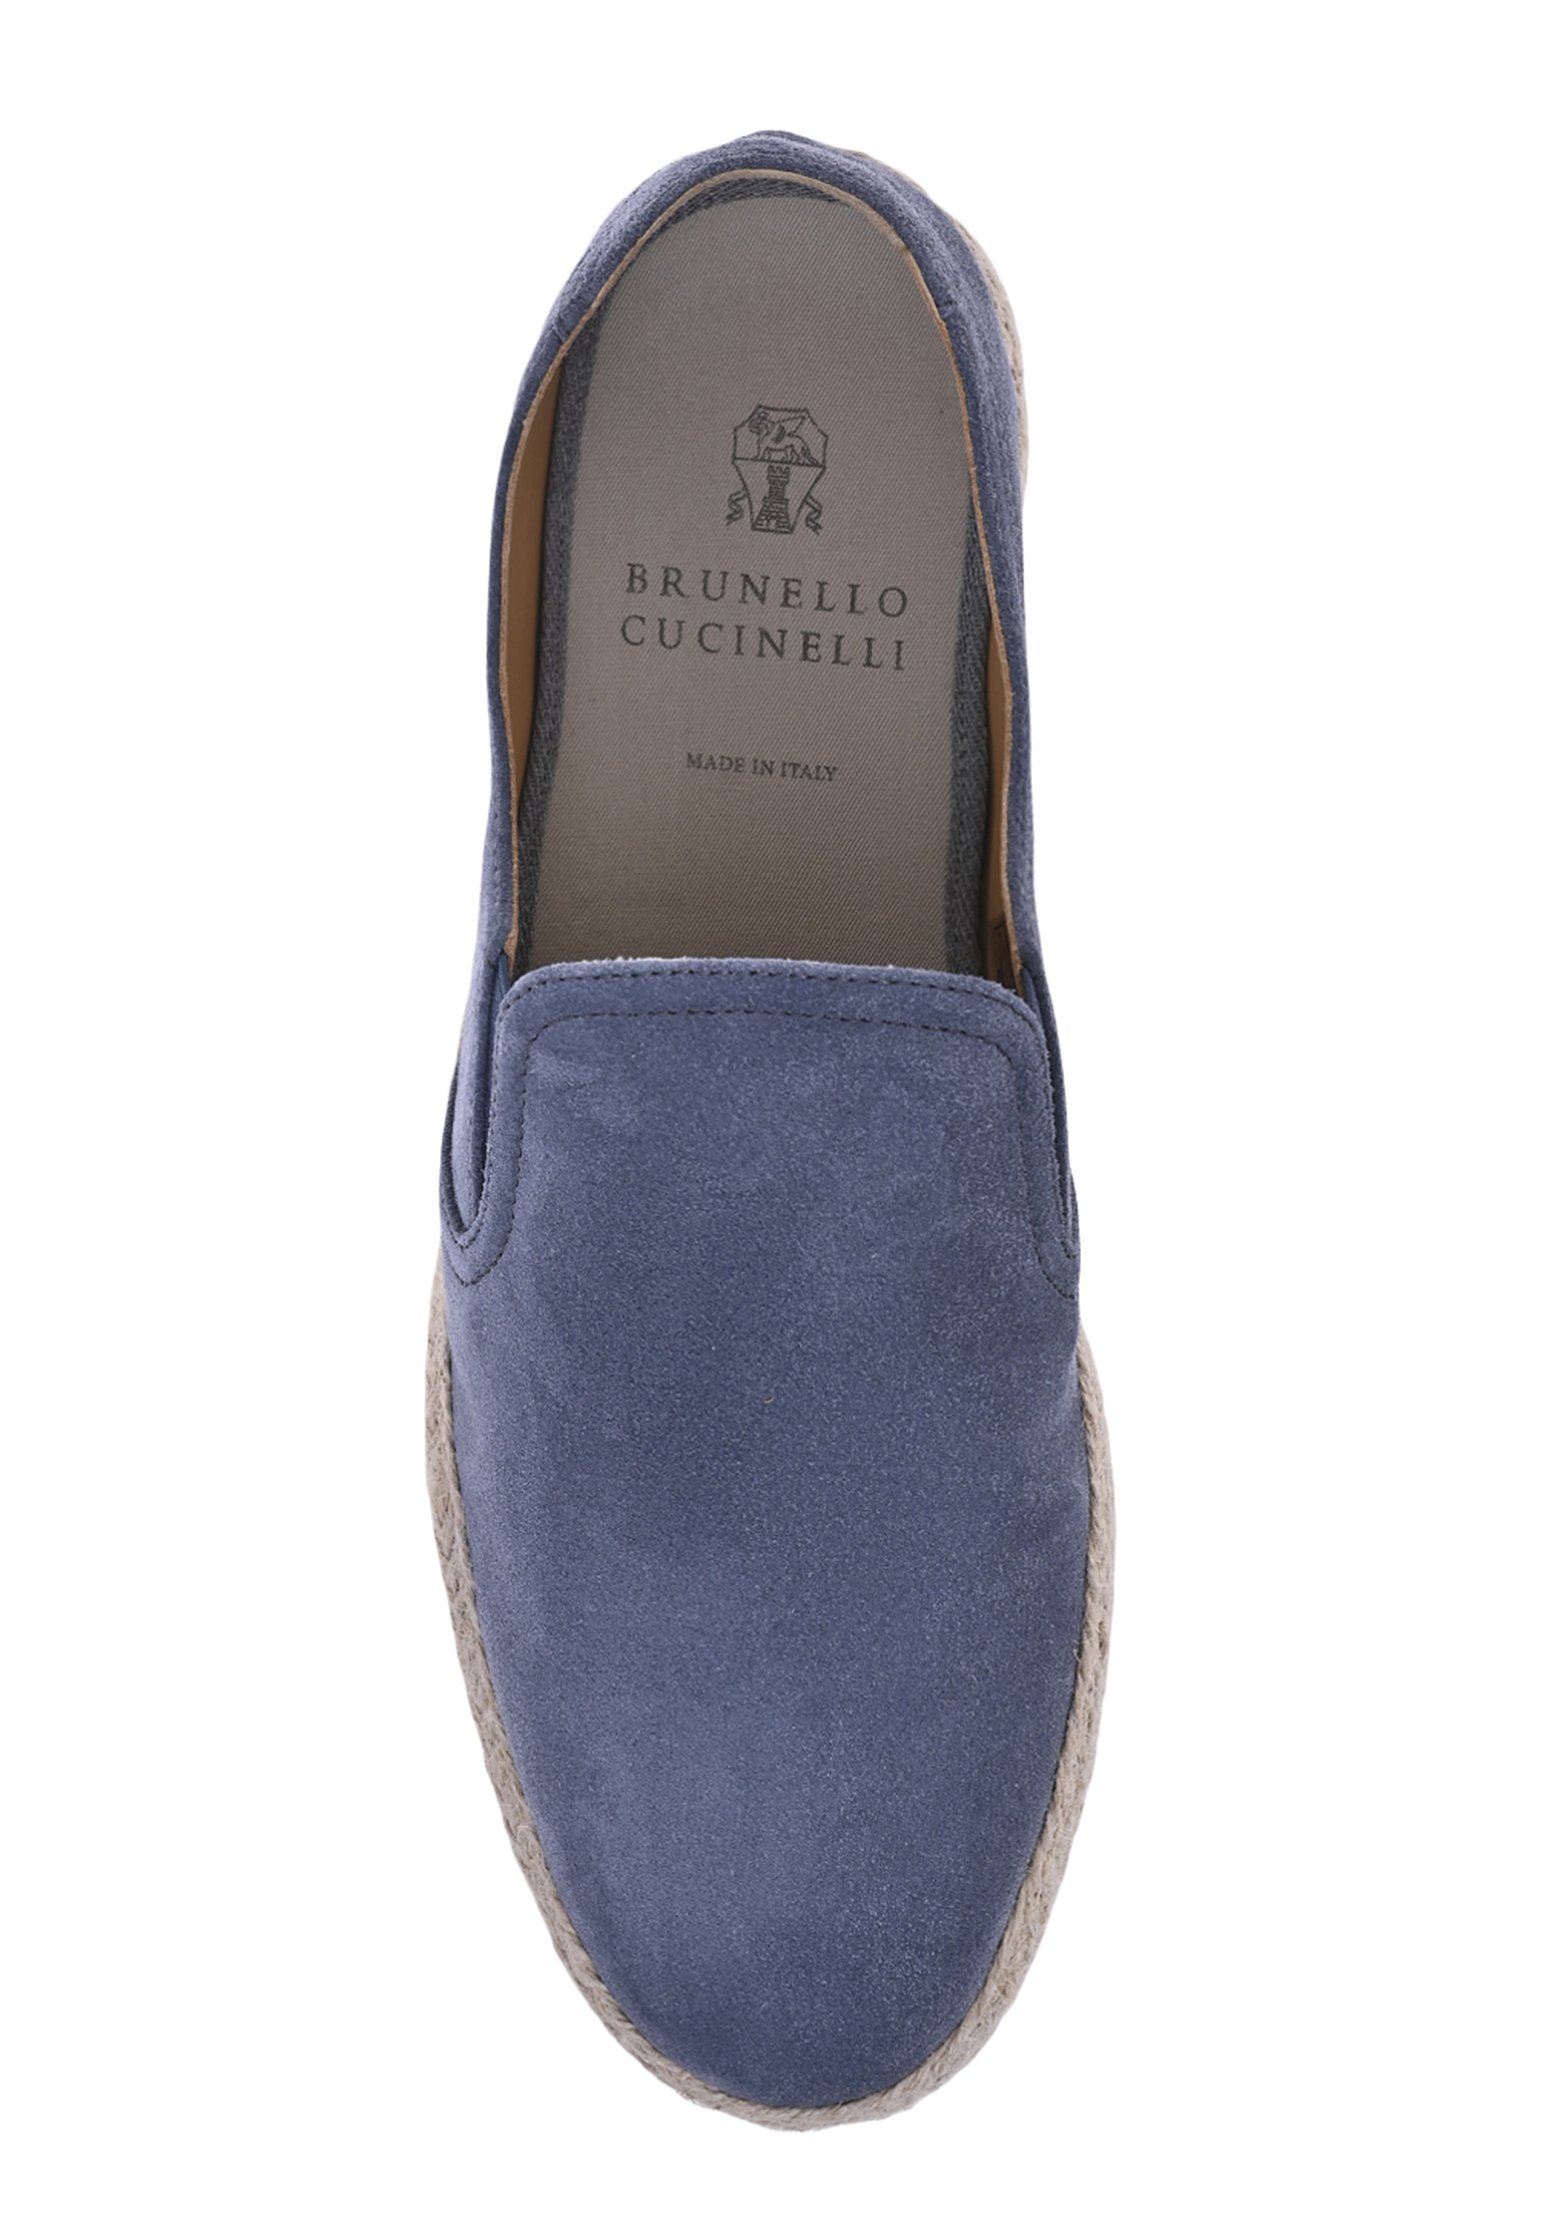 Scarpe BRUNELLO CUCINELLI Color: blue (Code: 1517) in online store Allure